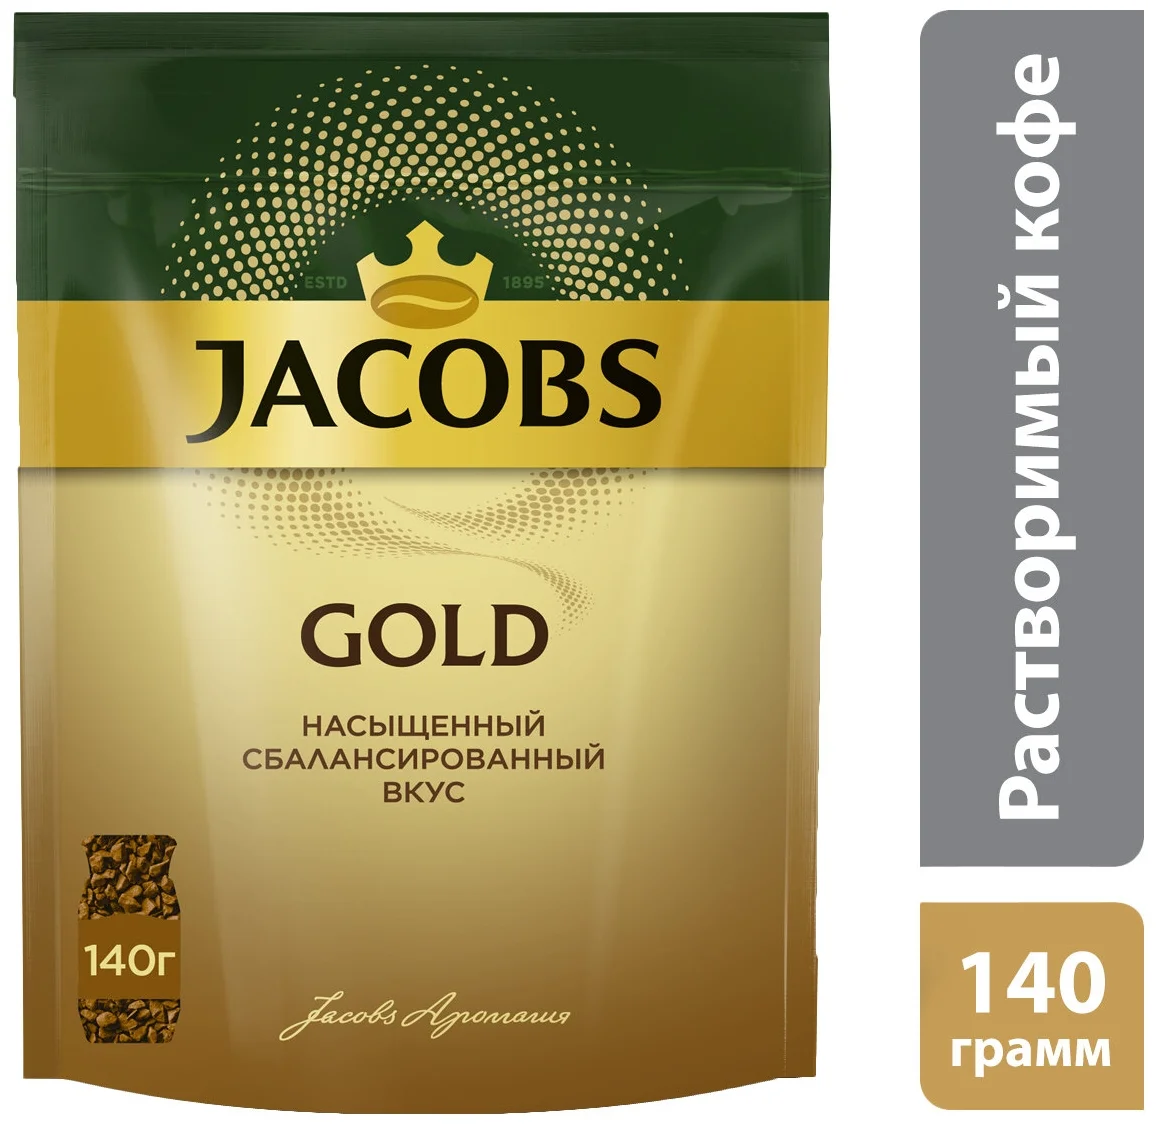 Jacobs "Gold" - технология изготовления: сублимированный